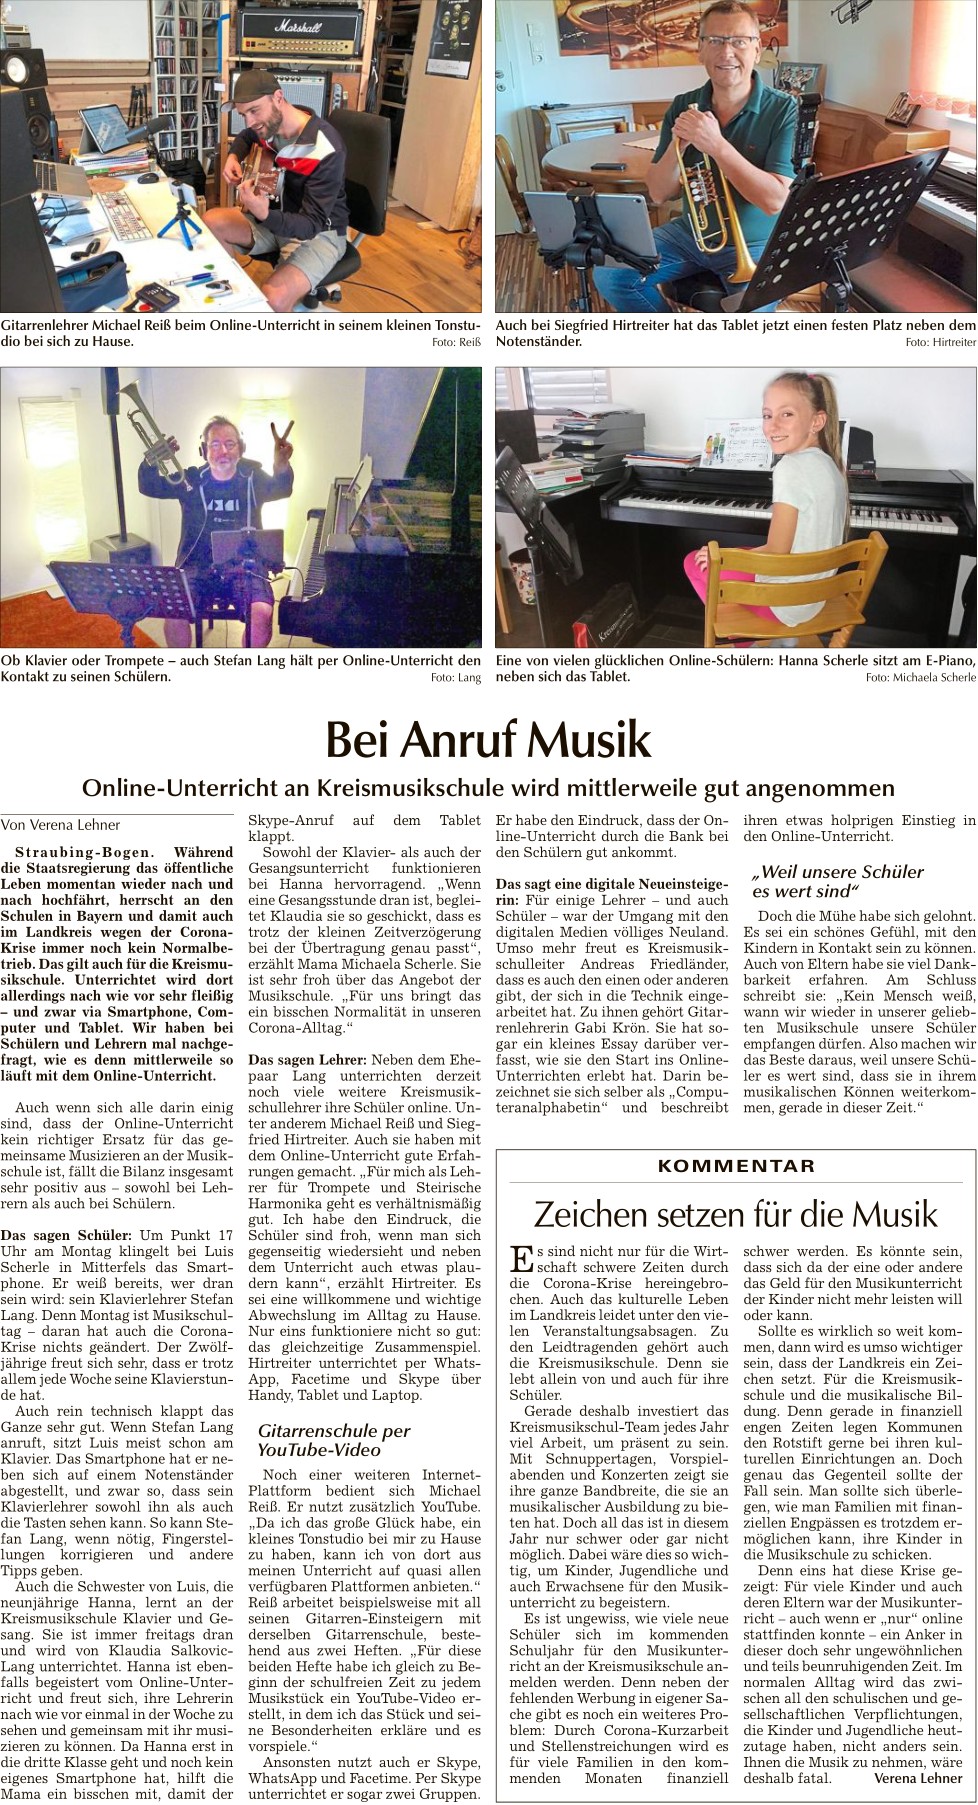 Bei Anruf Musik, Bogener Zeitung 11.5.2020